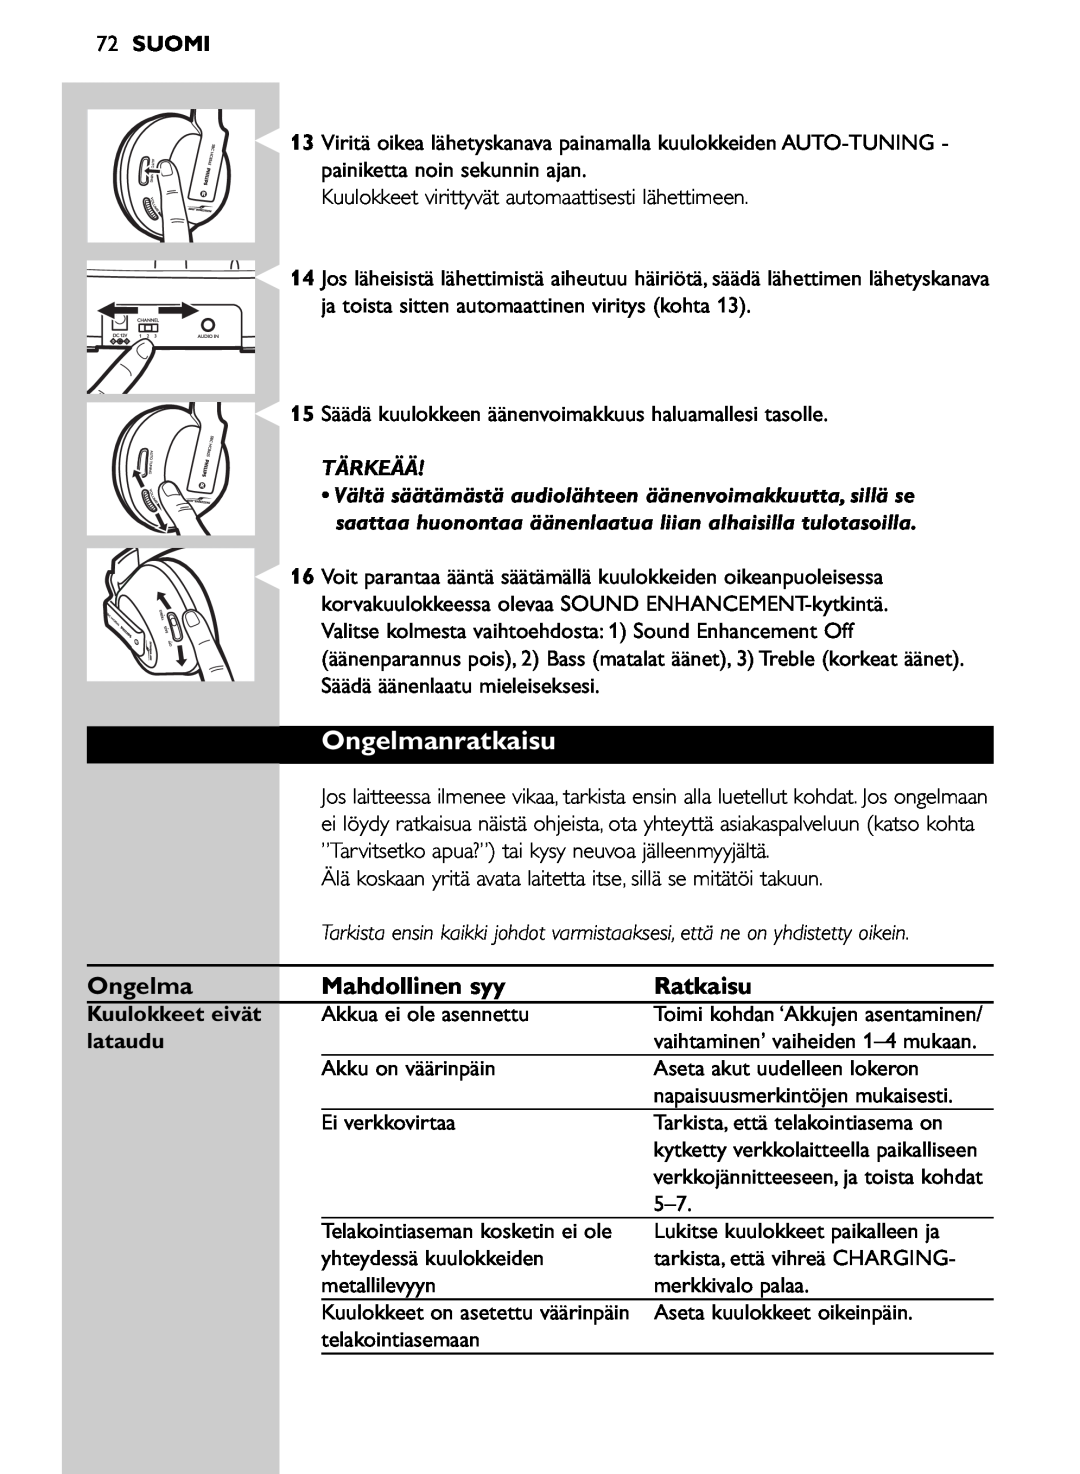 Philips SHC8565/00 manual Ongelmanratkaisu, 72SUOMI, Tärkeää, Kuulokkeet eivät, lataudu 